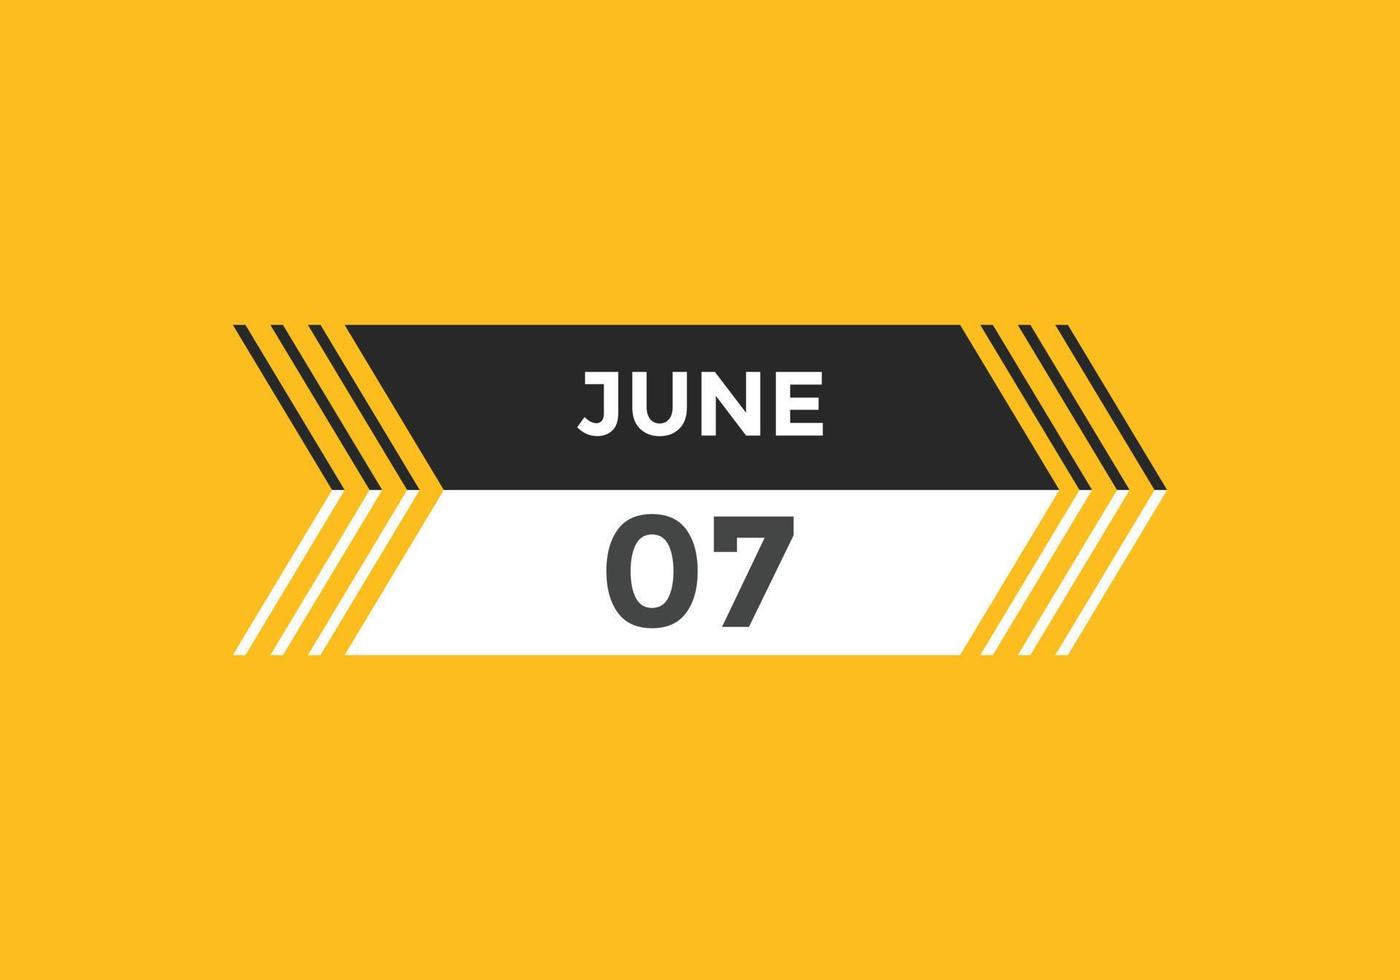 Recordatorio del calendario del 7 de junio. Plantilla de icono de calendario diario del 7 de junio. plantilla de diseño de icono de calendario 7 de junio. ilustración vectorial vector